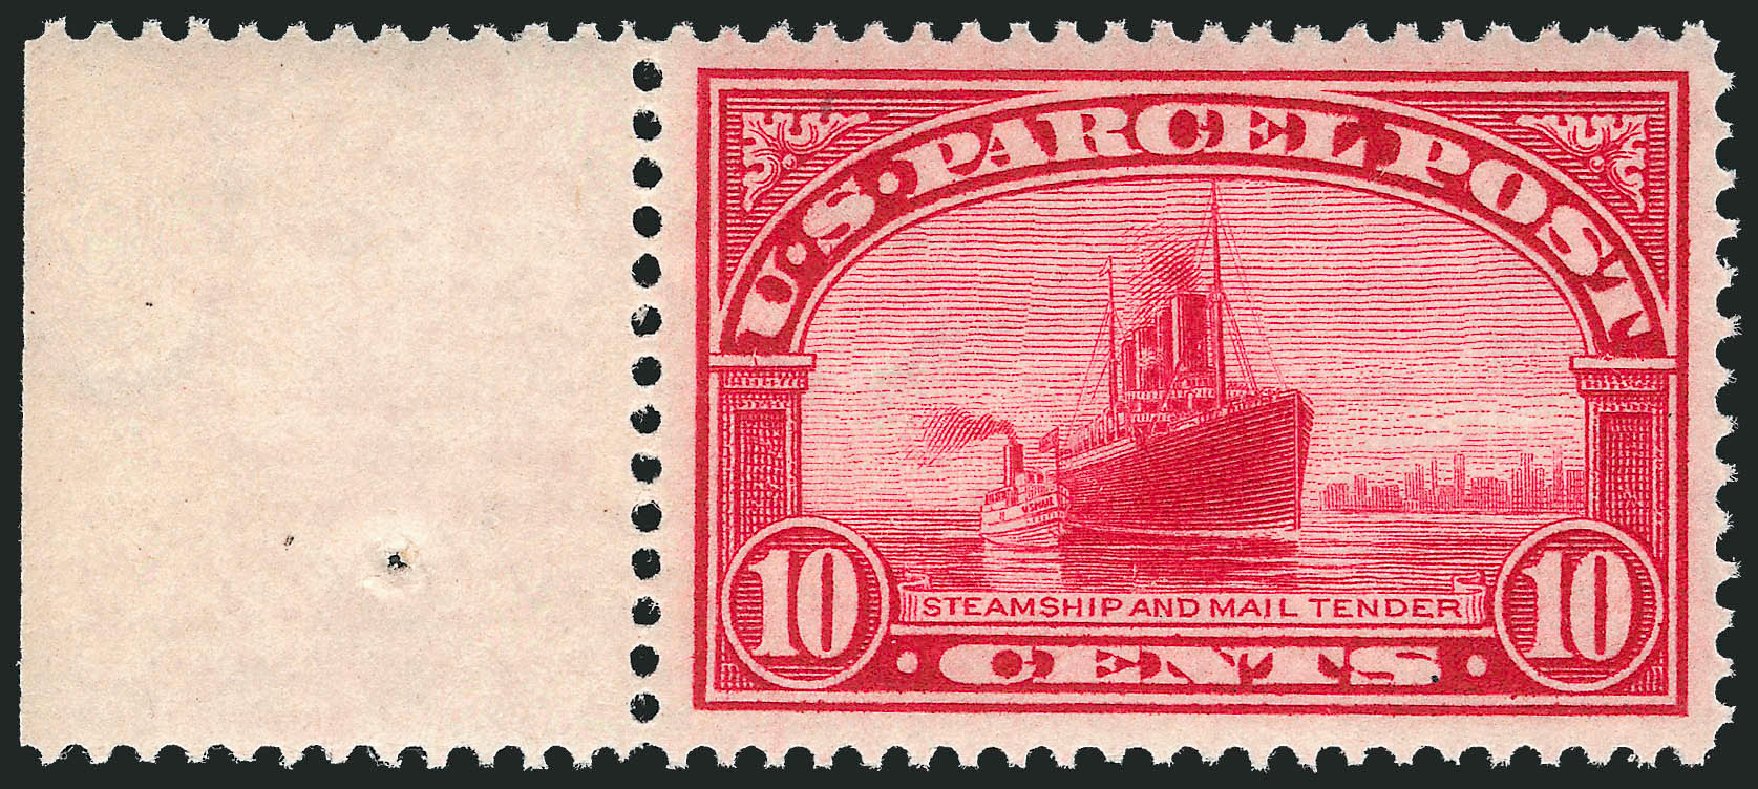 US Stamps Price Scott Q6 - 10c 1913 Parcel Post. Robert Siegel Auction Galleries, Mar 2013, Sale 1040, Lot 2174